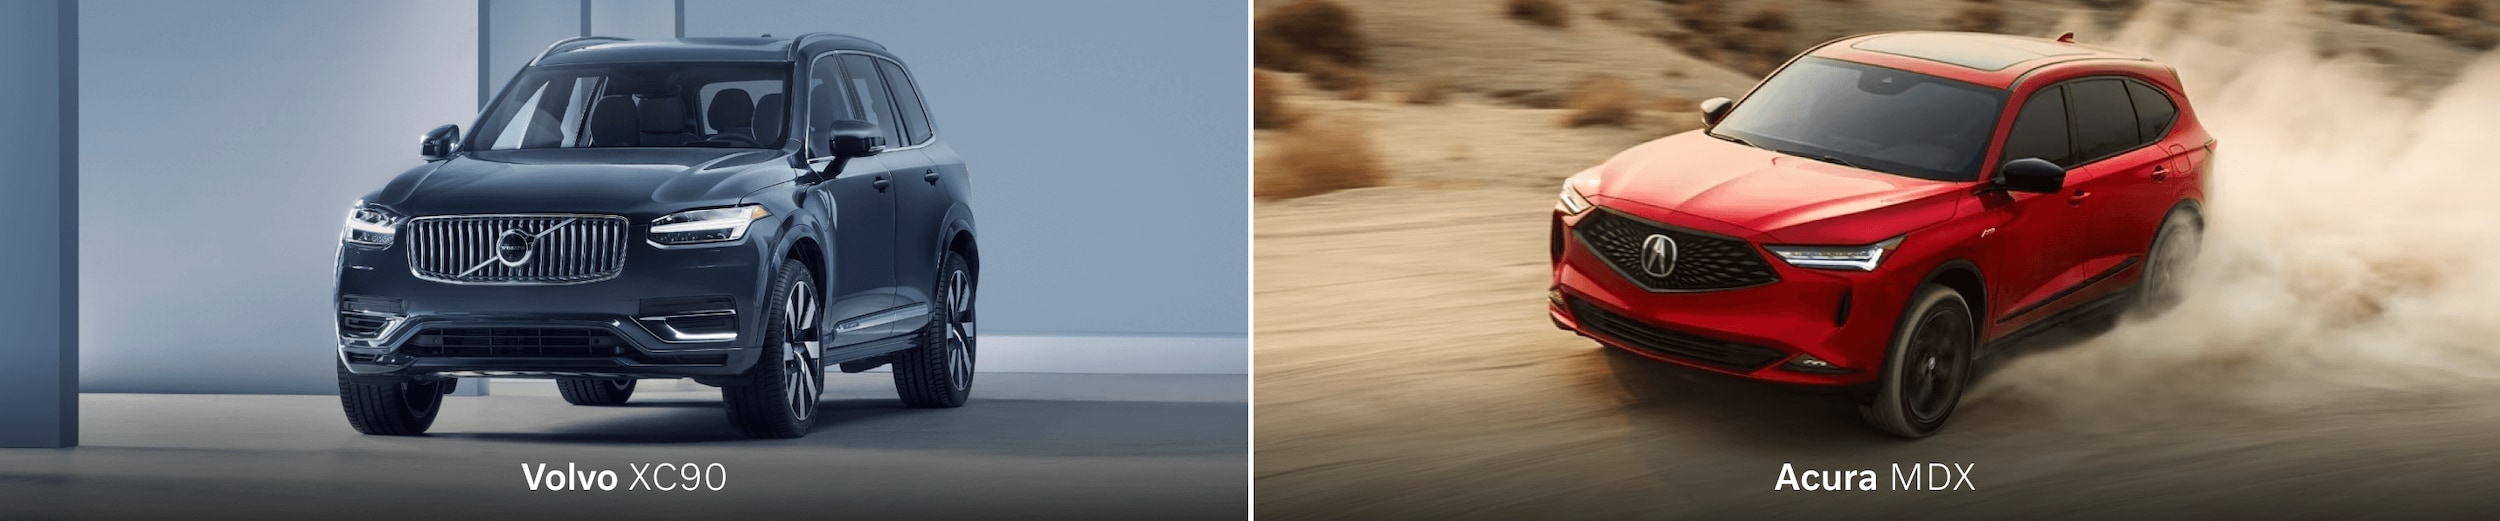 Volvo XC90 vs. Acura MDX Luxury SUV Comparison Showdown